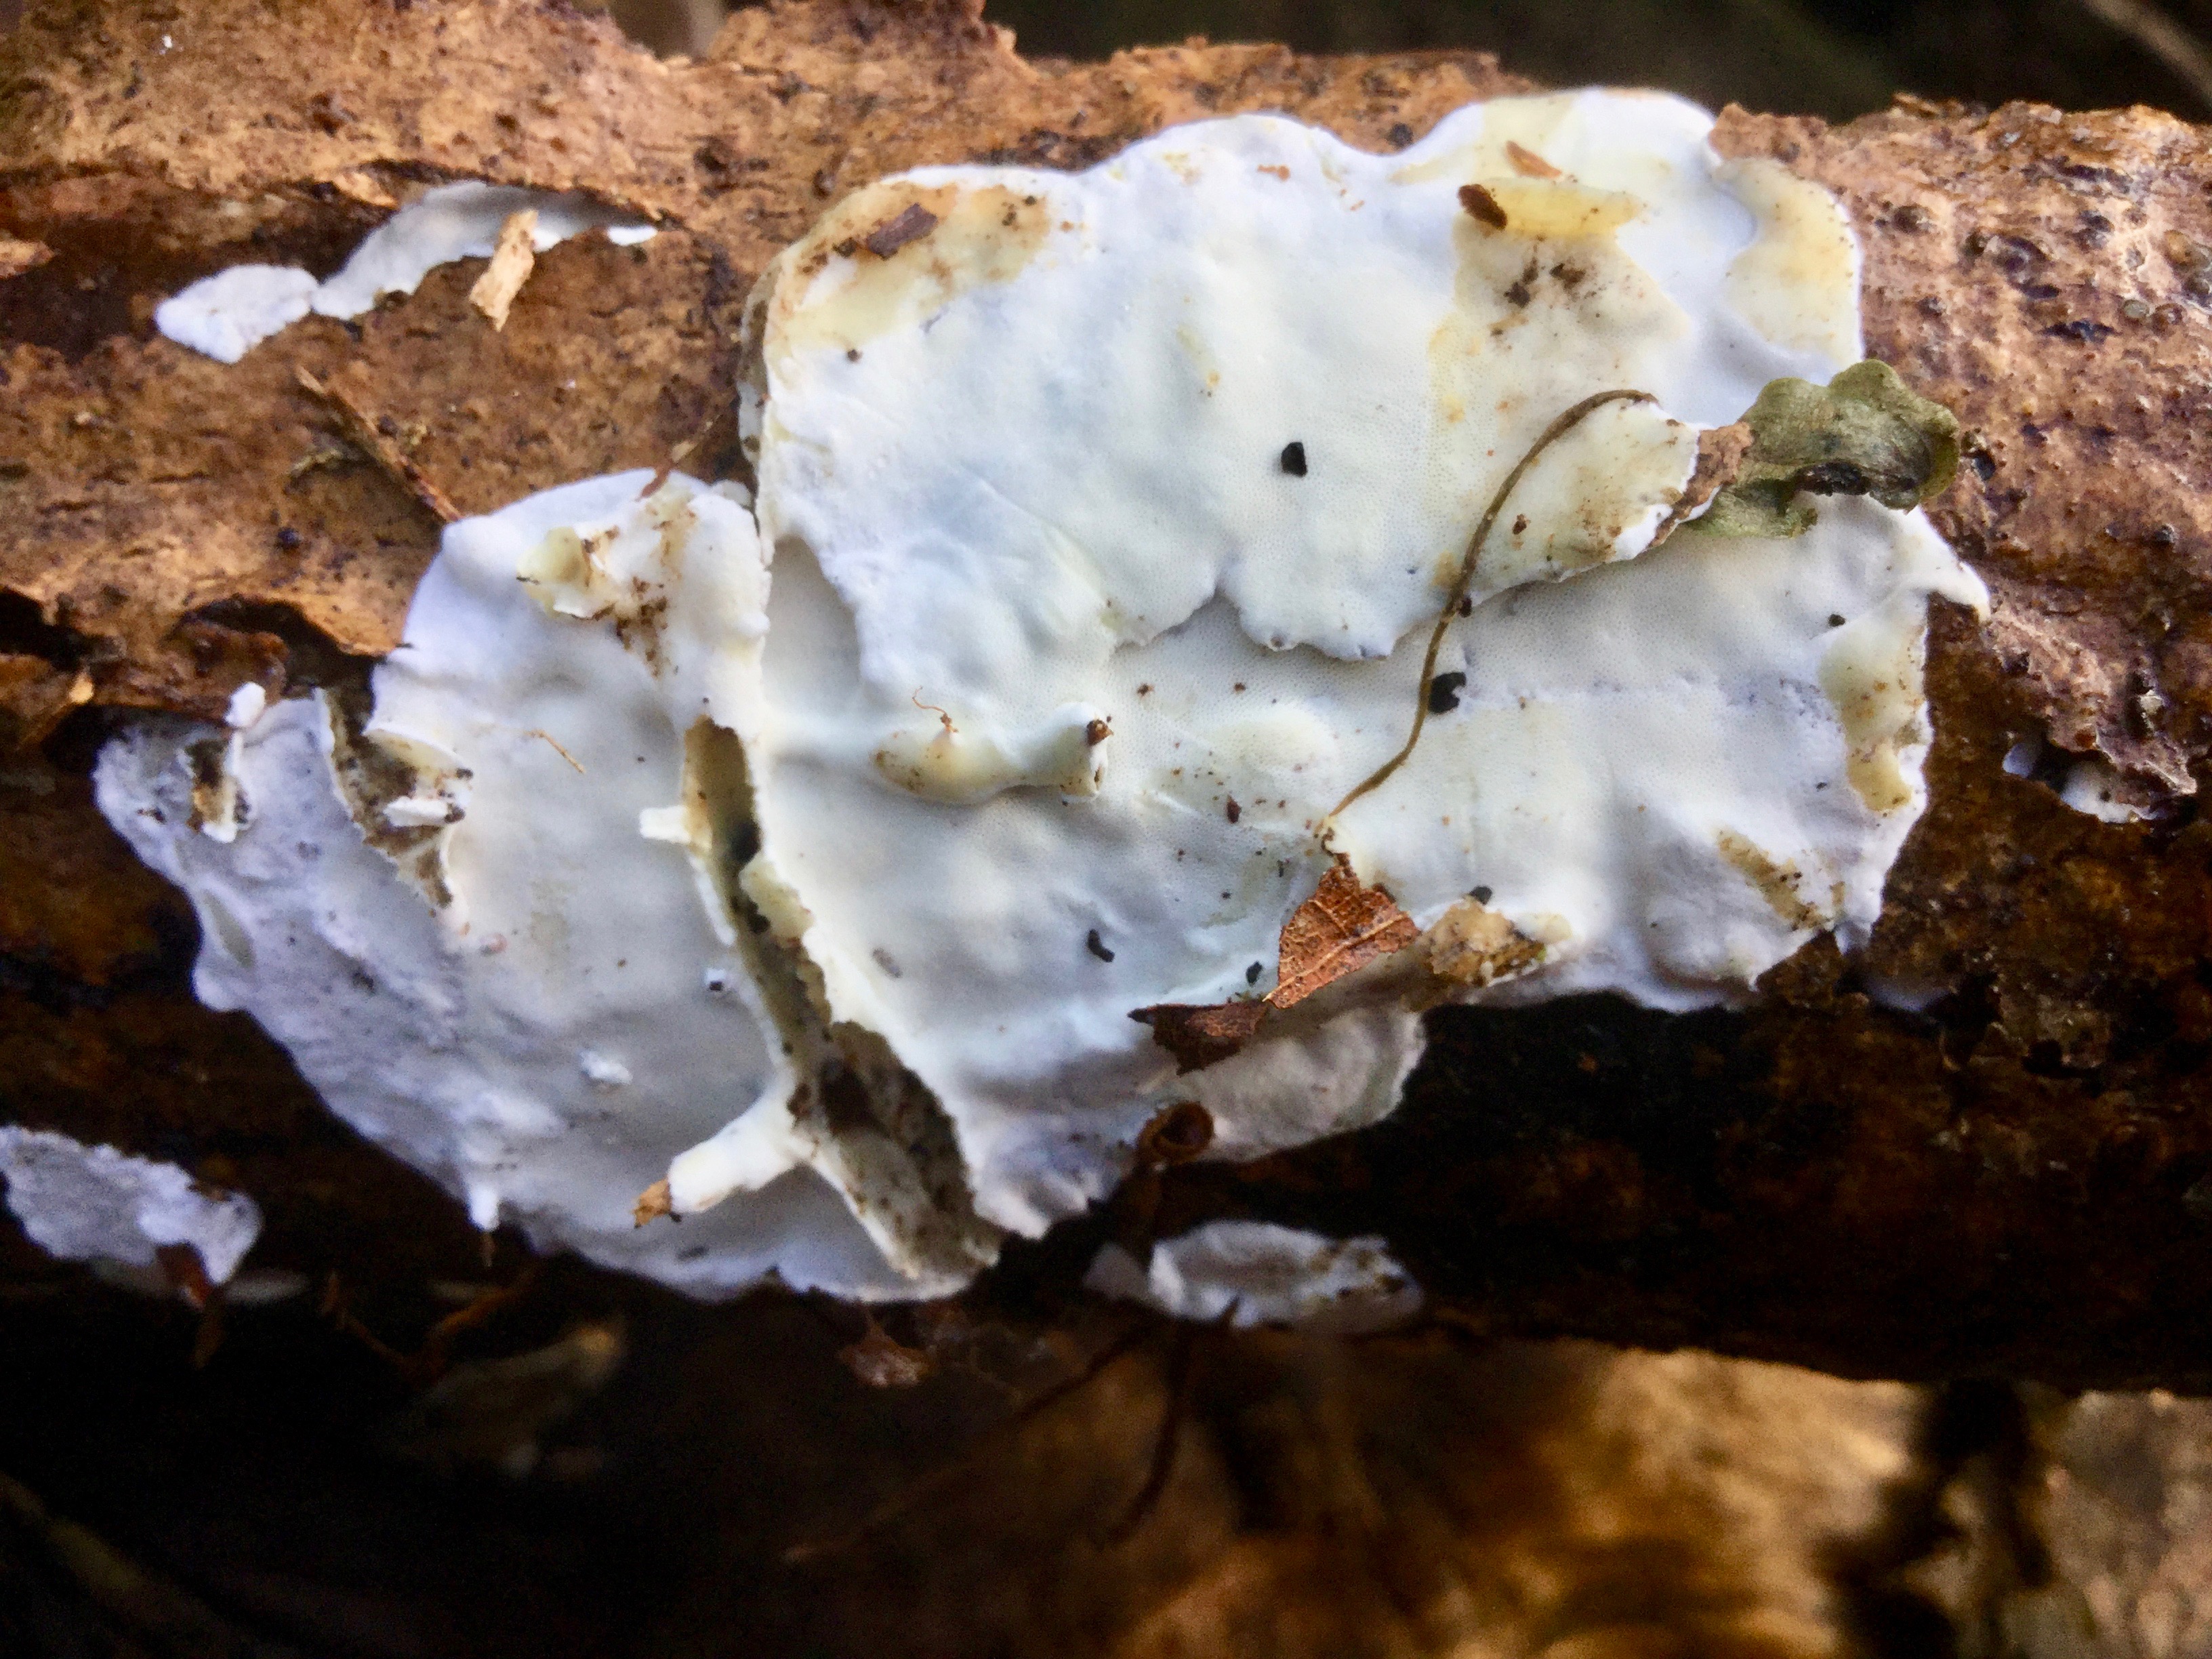 Mortonhall Fungi - 2 Feb 2020 - Photo 41